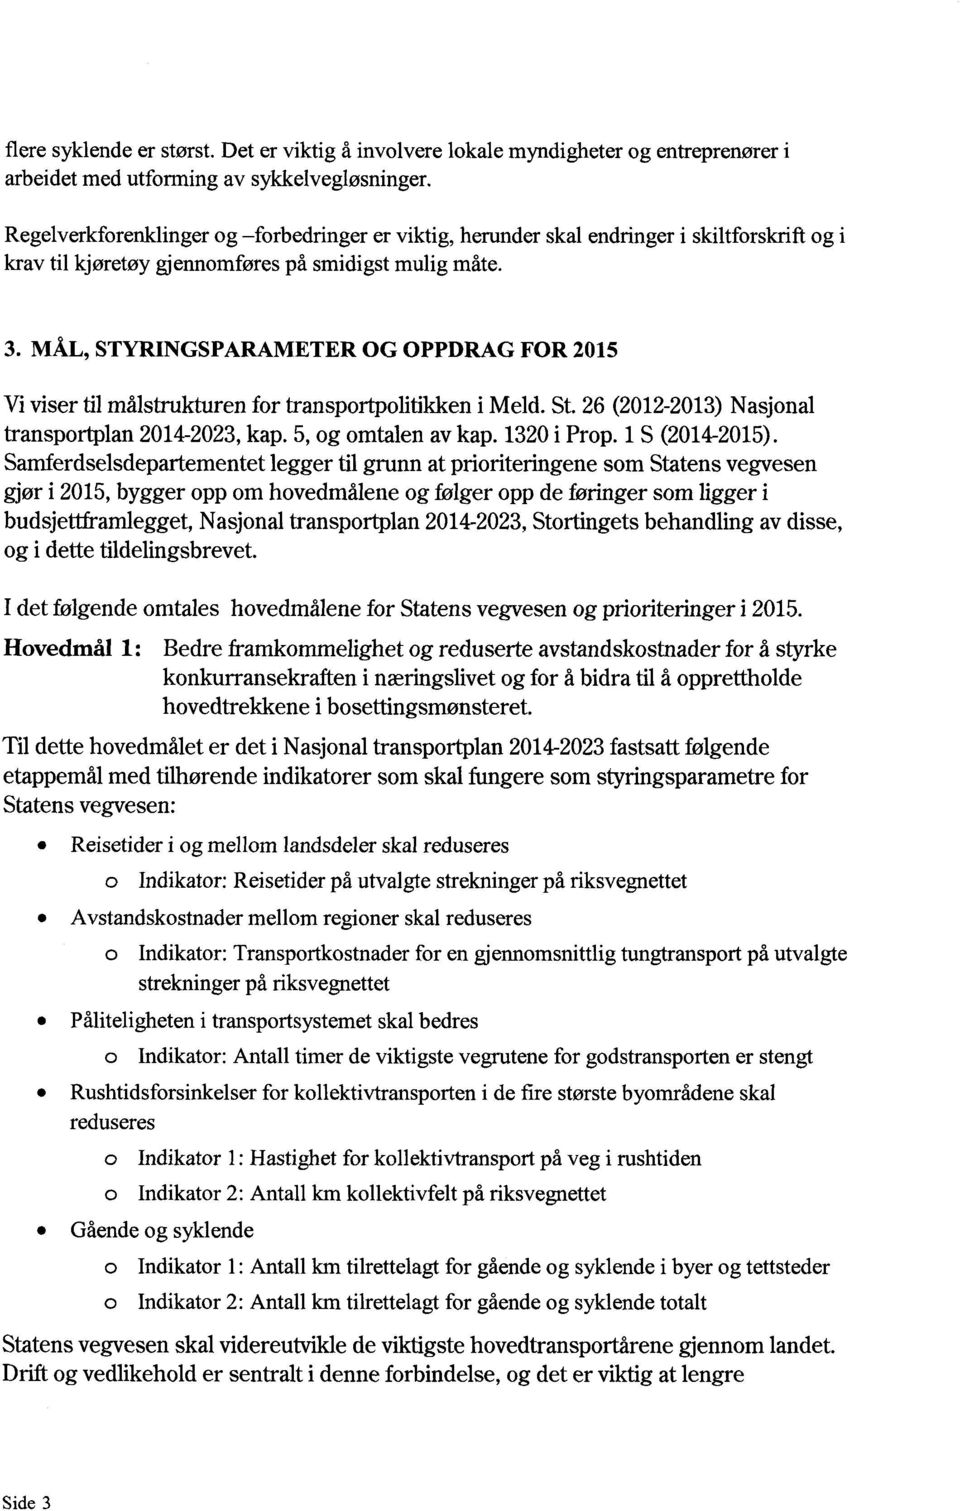 MÅL, STYRINGSPARAMETER OG OPPDRAG FOR 2015 Vivisertilmålstrukturenfor transportpolitikkeni Meld.St.26 (2012-2013)Nasjonal transportplan2014-2023, kap. 5,og omtalenavkap. 1320i Prop.1S (2014-2015).